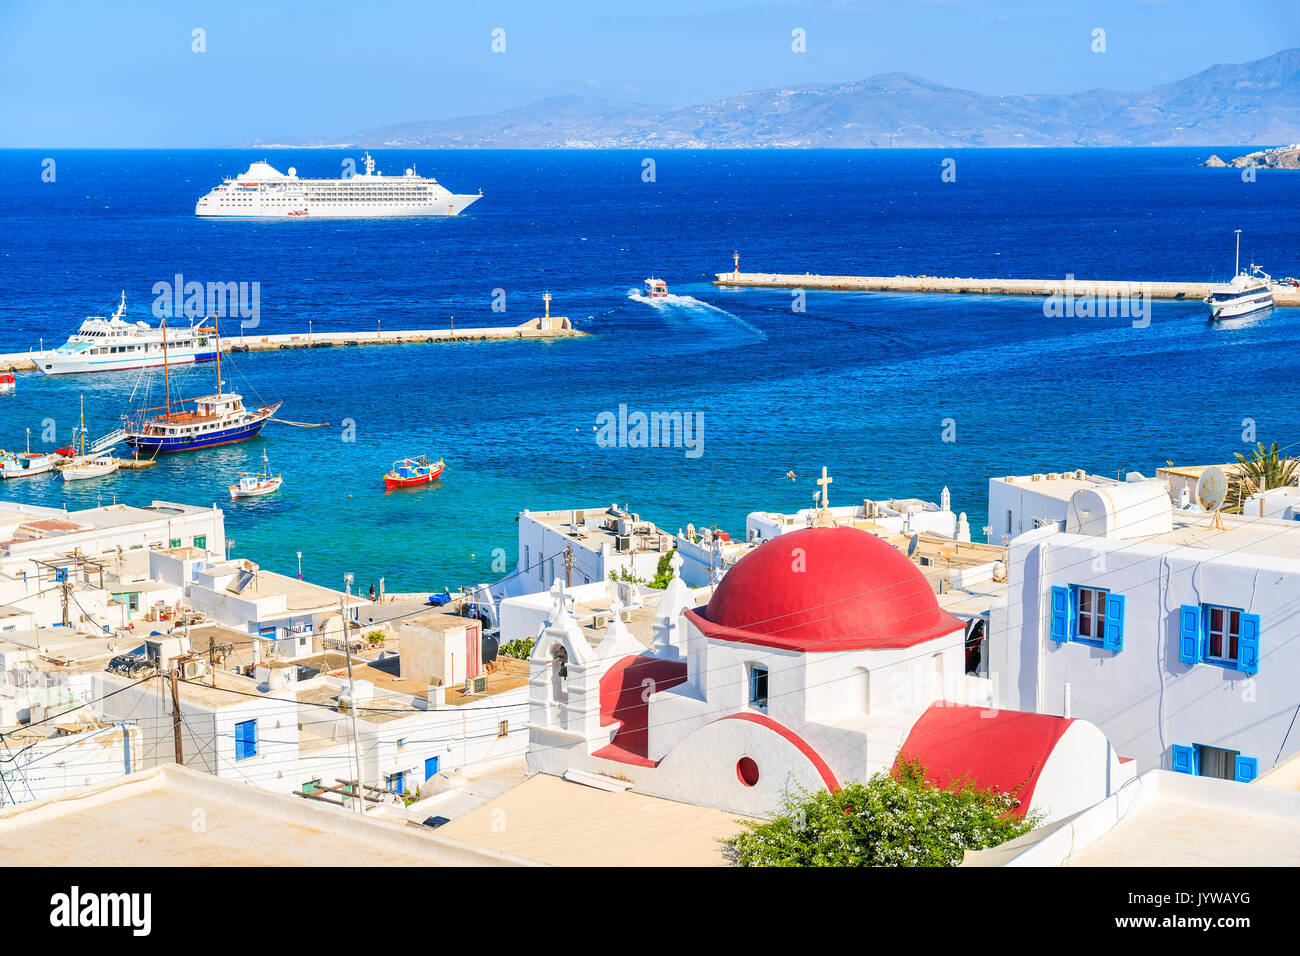 Grec typique église blanche avec dôme rouge et vue sur le port de Mykonos, l'île de Mykonos, Cyclades, Grèce Banque D'Images